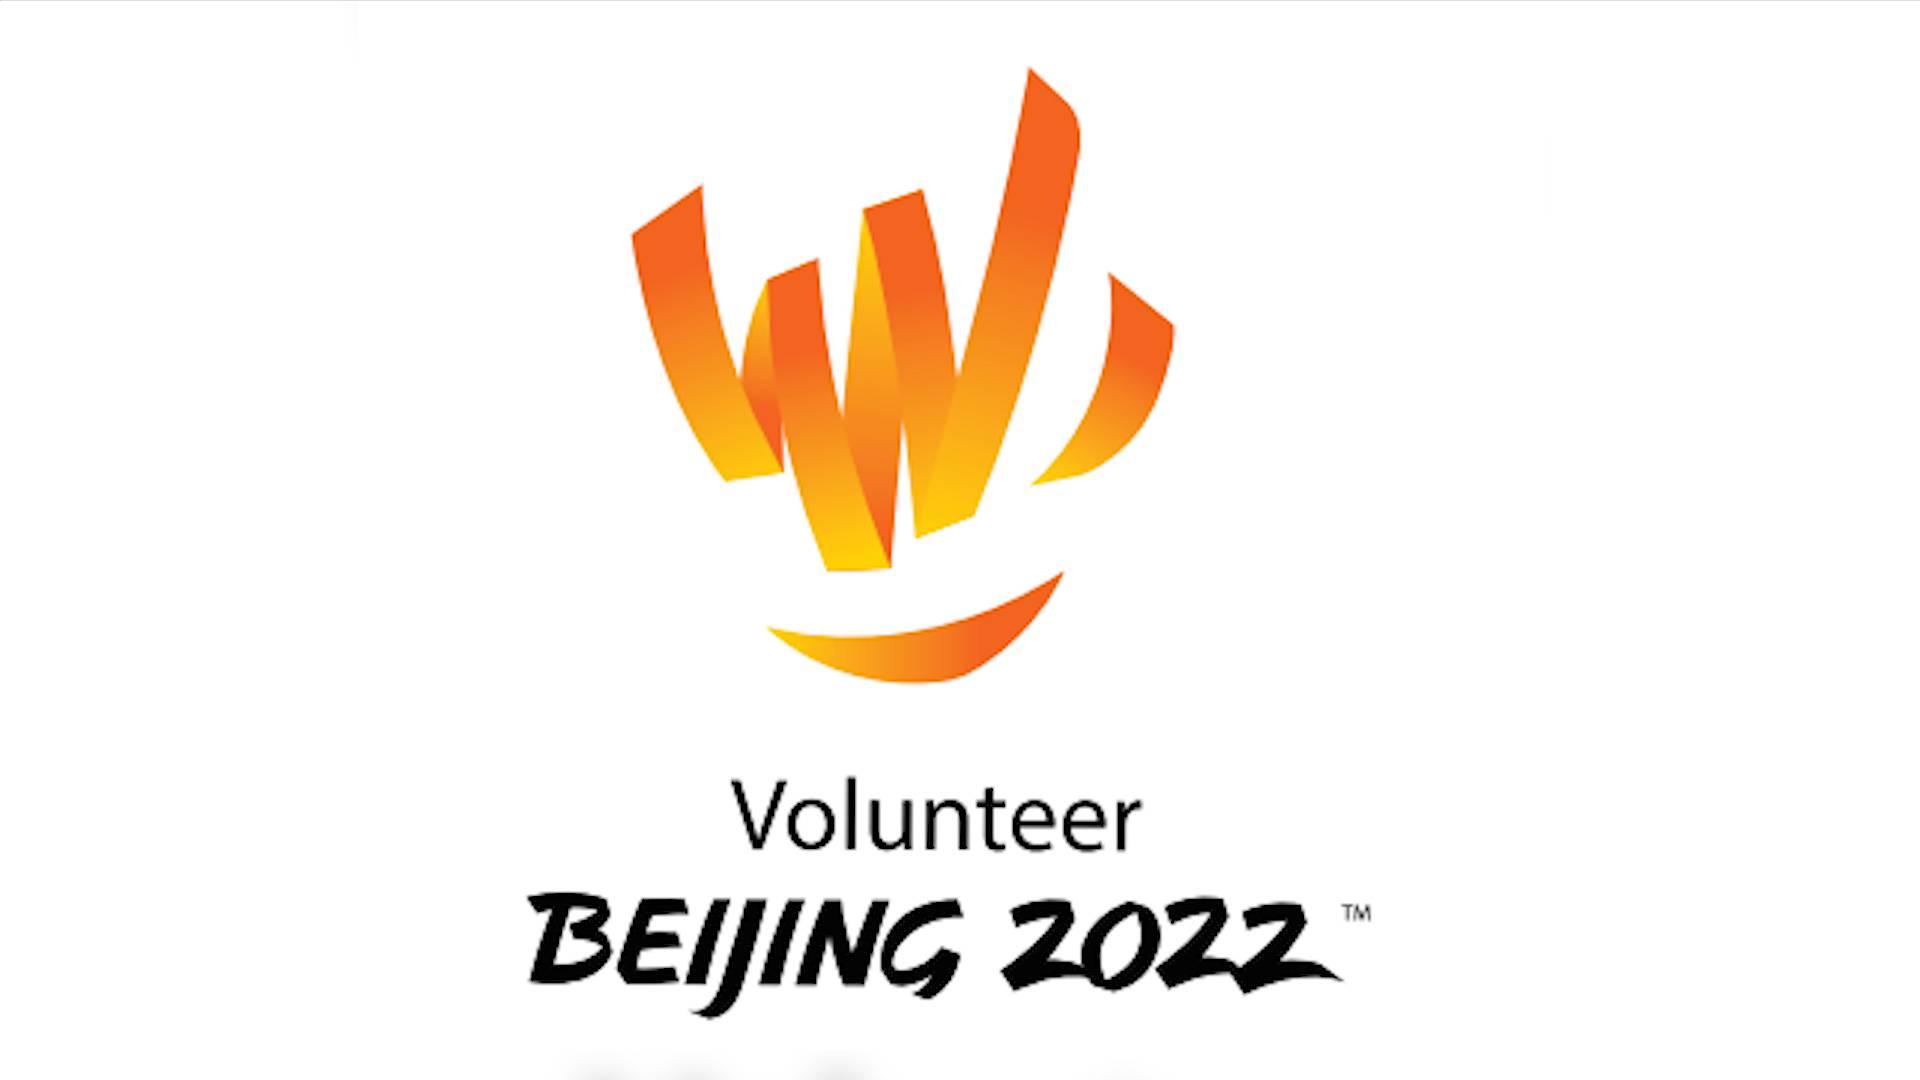 奉献、爱与微笑——专家解读北京冬奥会和冬残奥会志愿者标志